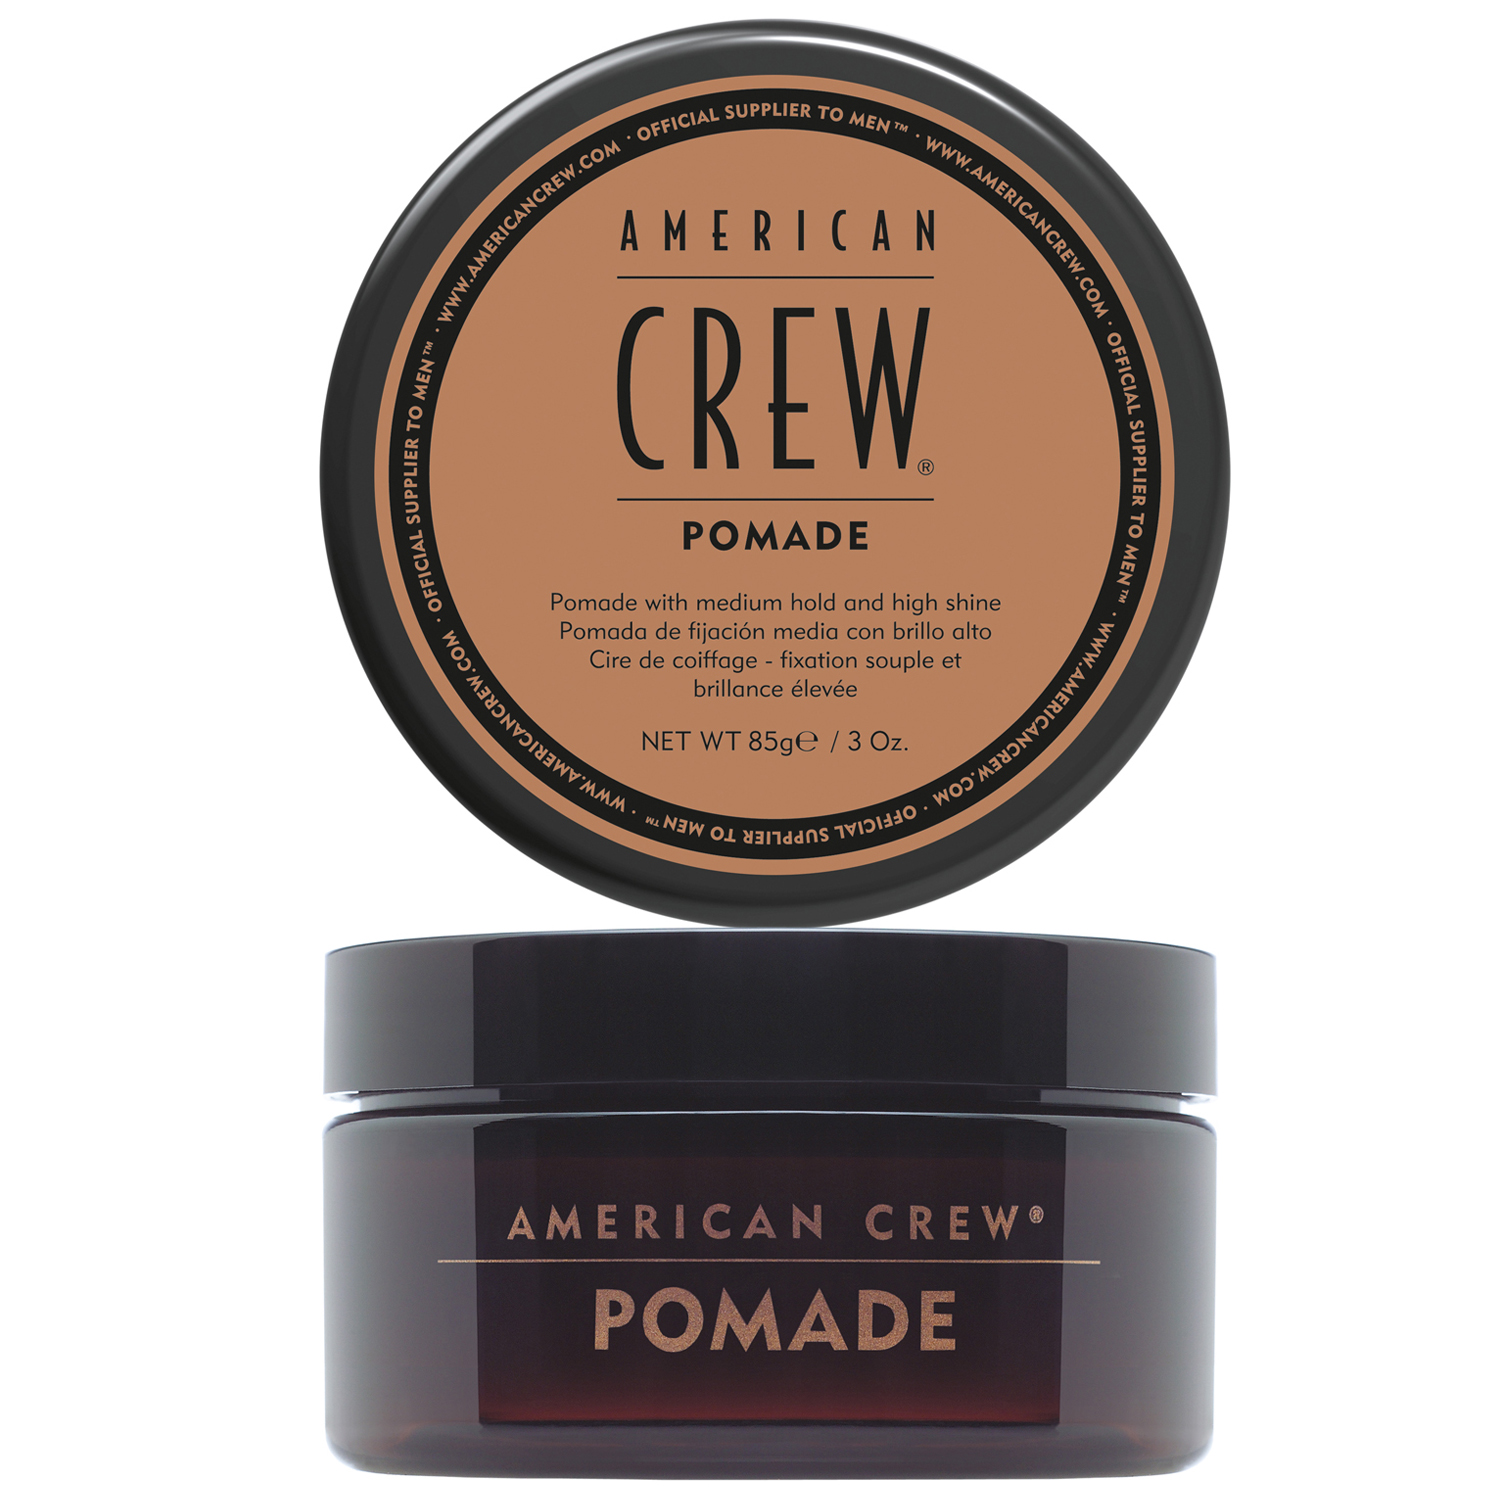 American Crew Помада для укладки волос средней фиксации Pomade, 85 мл (American Crew, Styling) american crew моделирующая глина для укладки волос сильной фиксации 85 г american crew styling